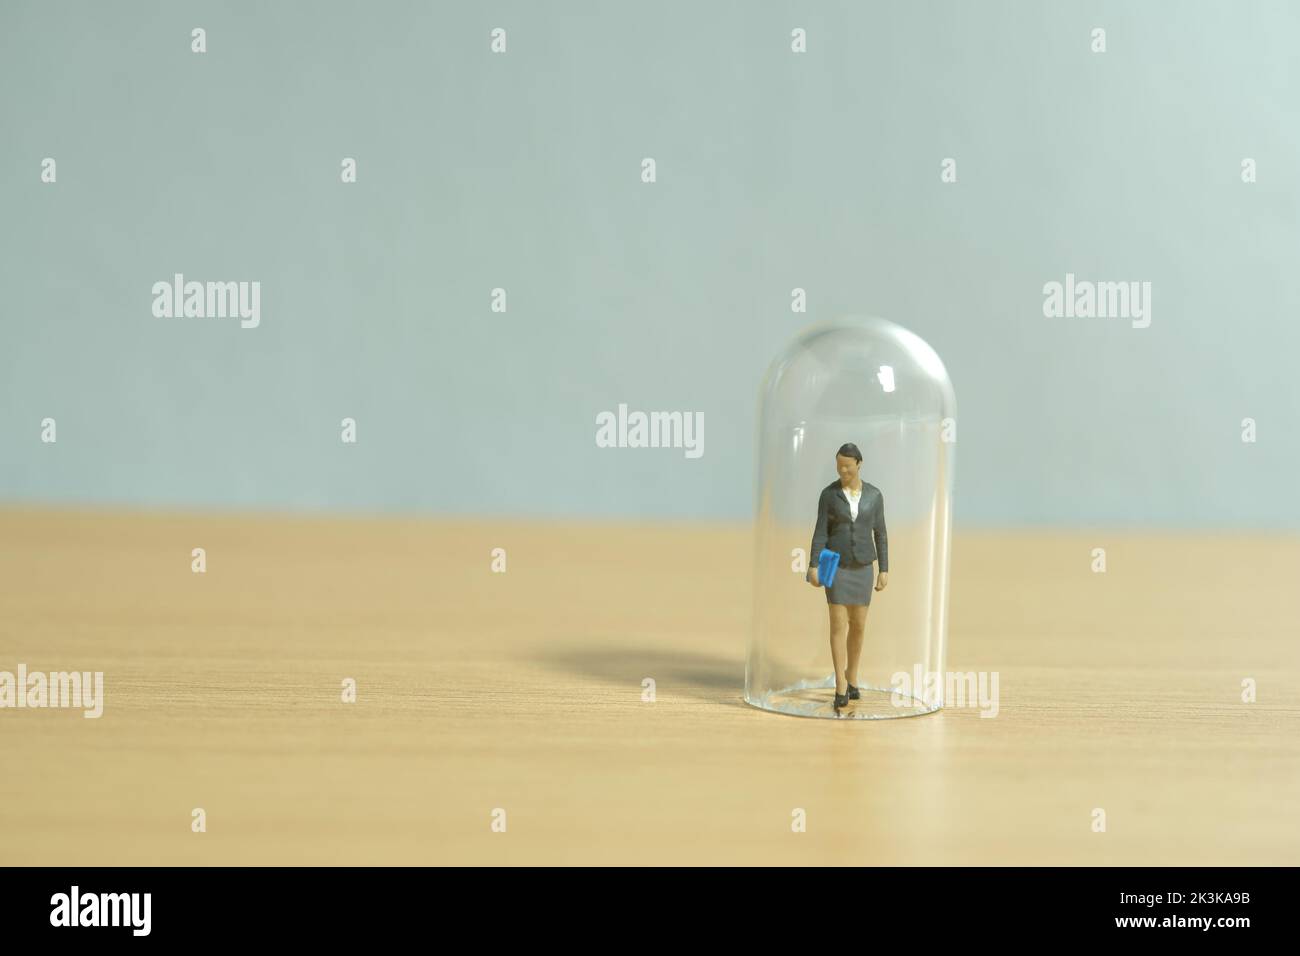 Miniatur Menschen Spielzeug Figur Fotografie. Frauenbeschränkung. Eine Geschäftsfrau, die in der Glaskuppel steht. Isoliert auf weißem Hintergrund. Bild pho Stockfoto